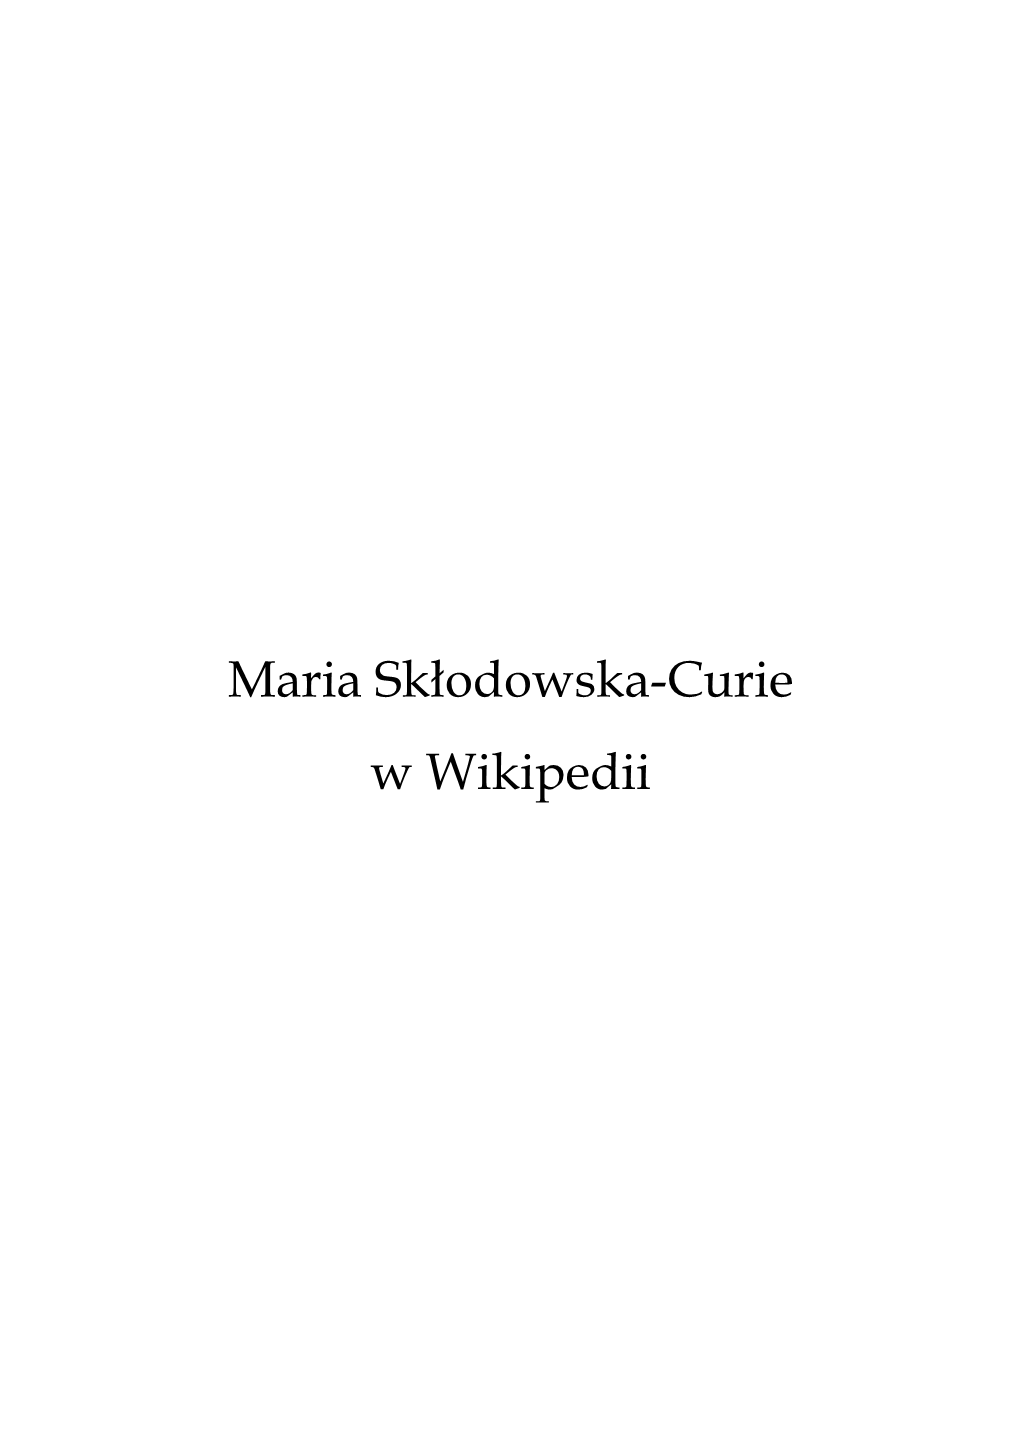 Maria Skłodowska-Curie W Wikipedii Maria Skłodowska-Curie